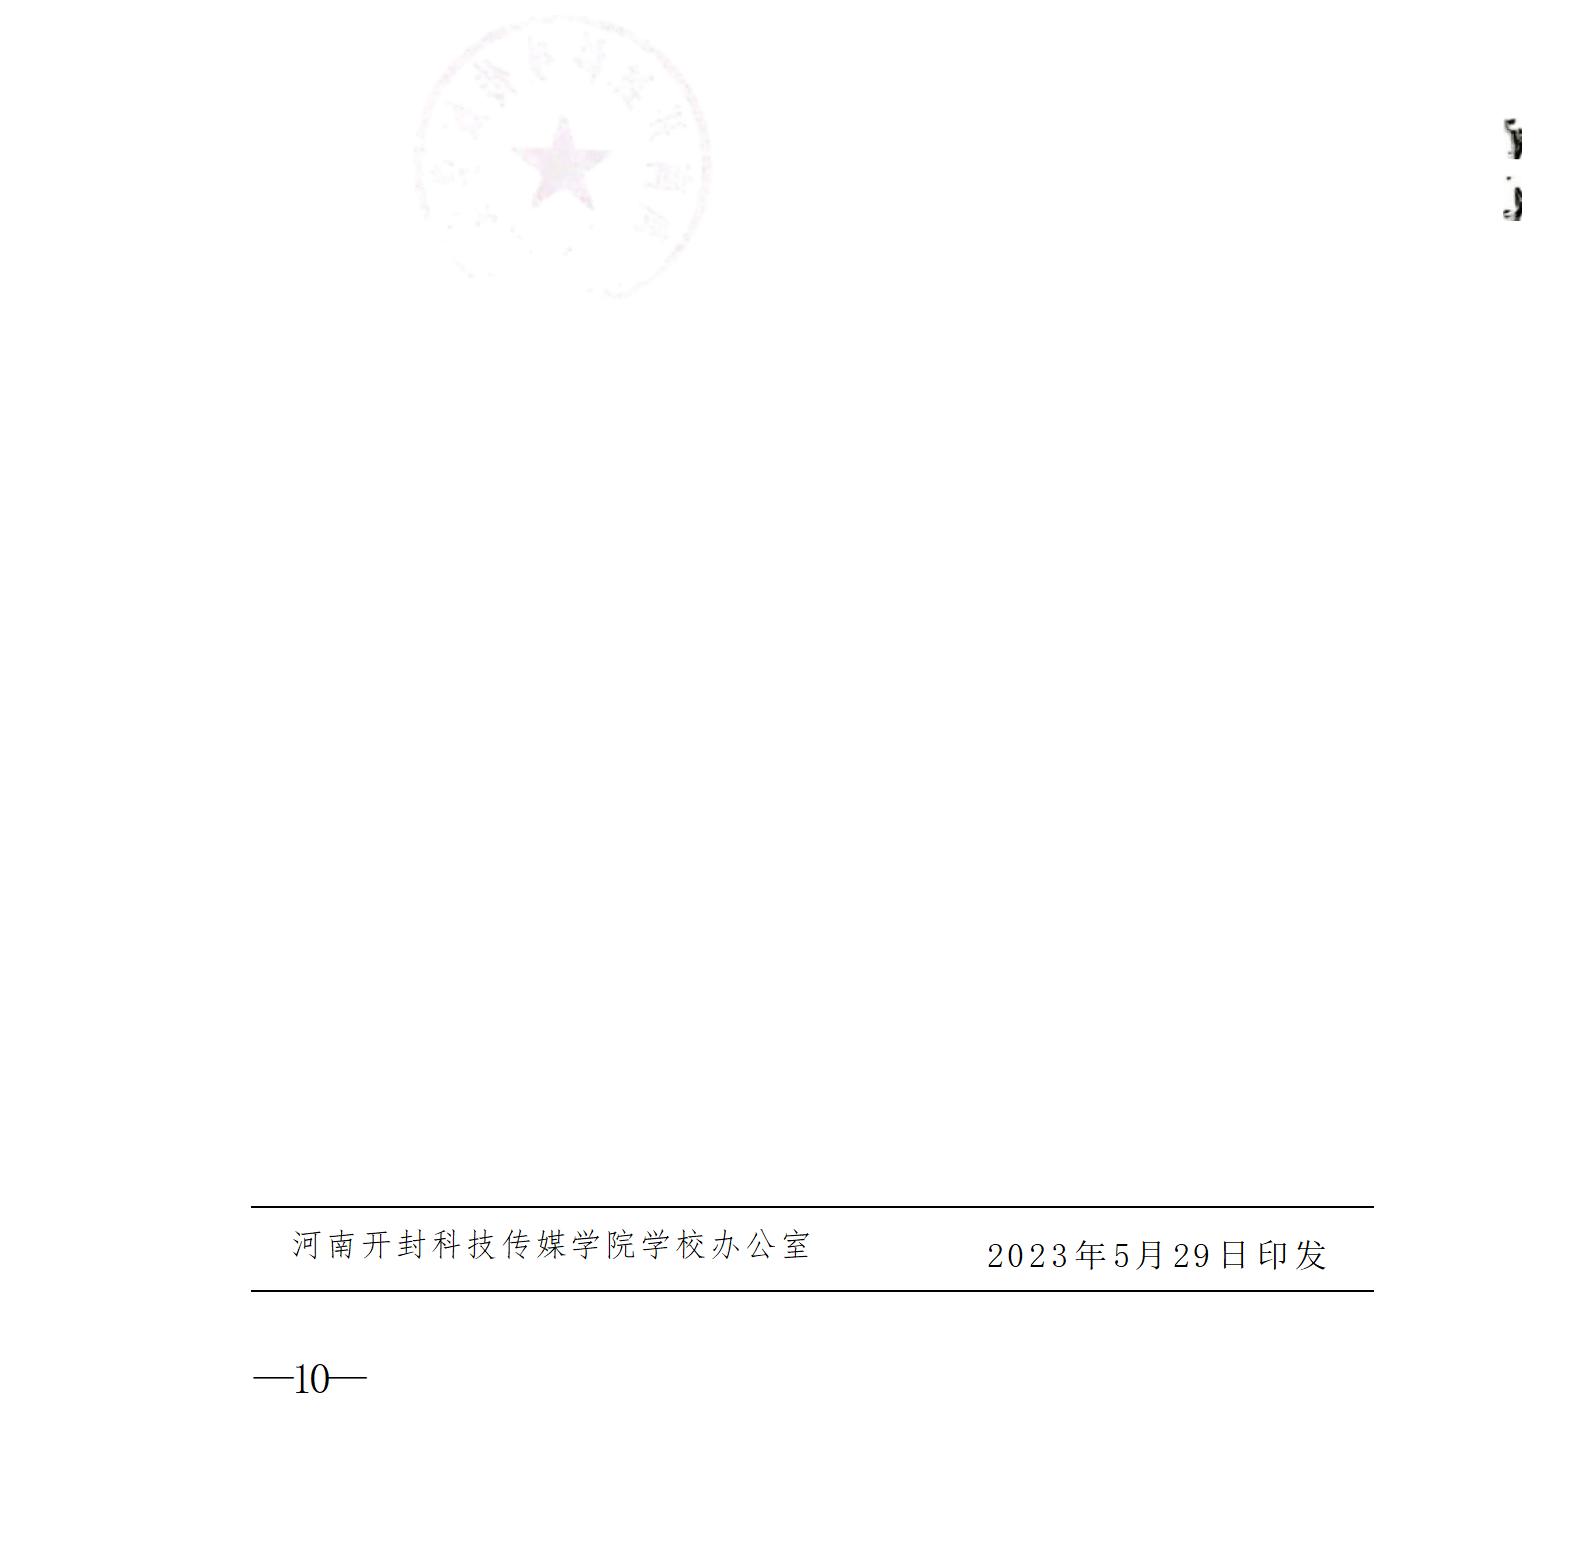 澳网官方网站·「中国」官方网站《高校教师（实验人员）职称评审办法》、《自主评审工作实施方案》_04